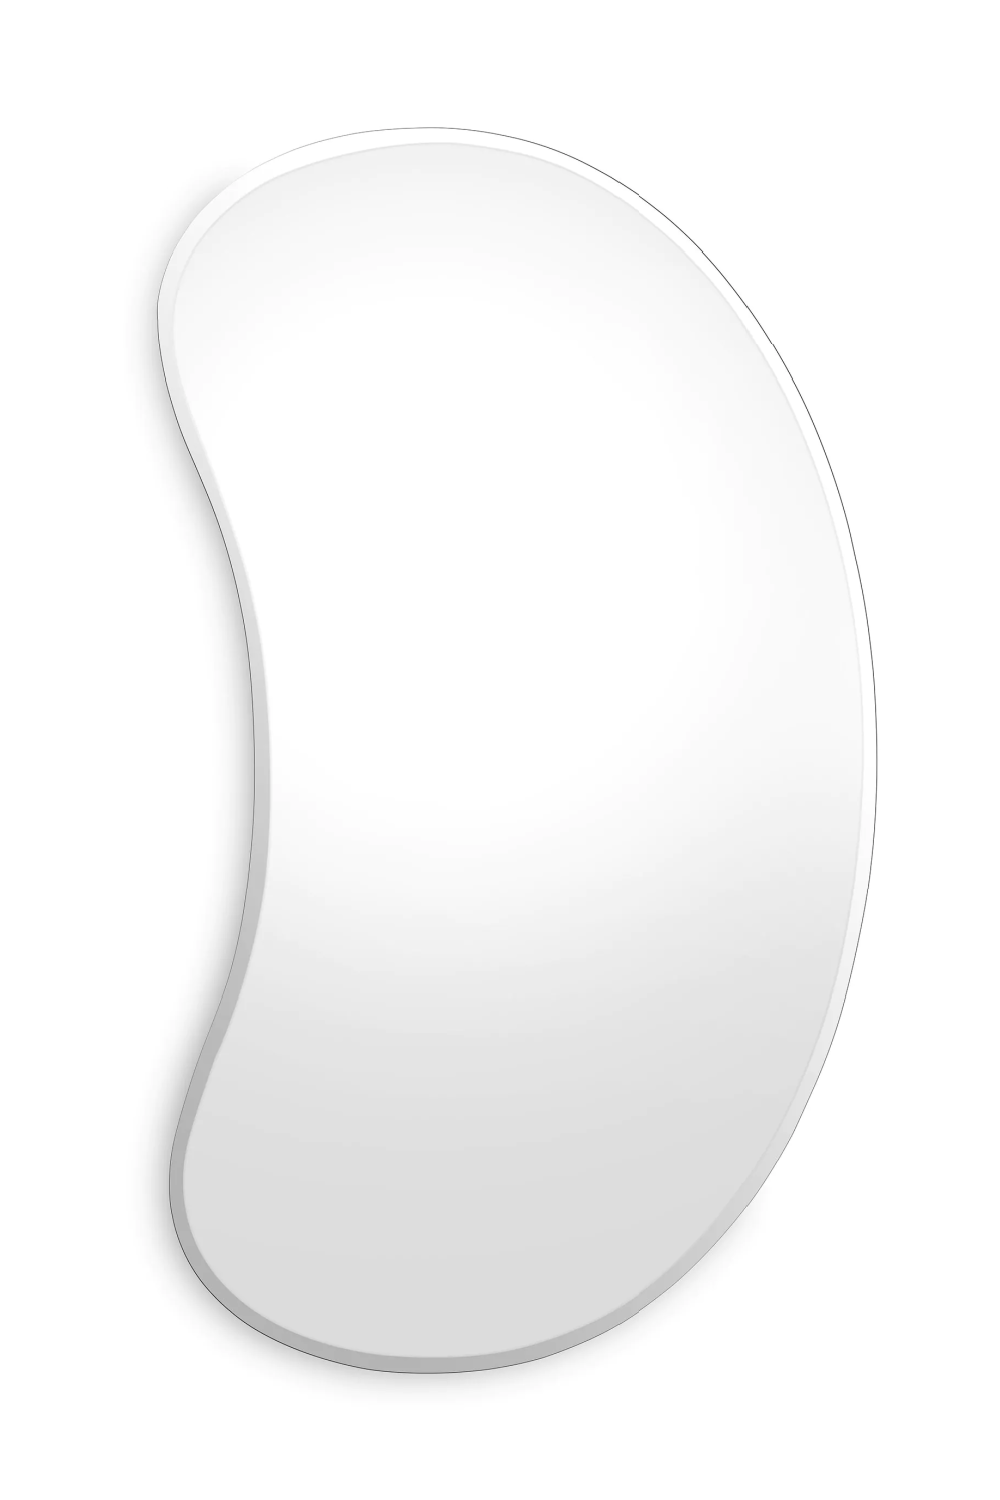 Bean-Shaped Mirror | Eichholtz Garrett | OROA.com